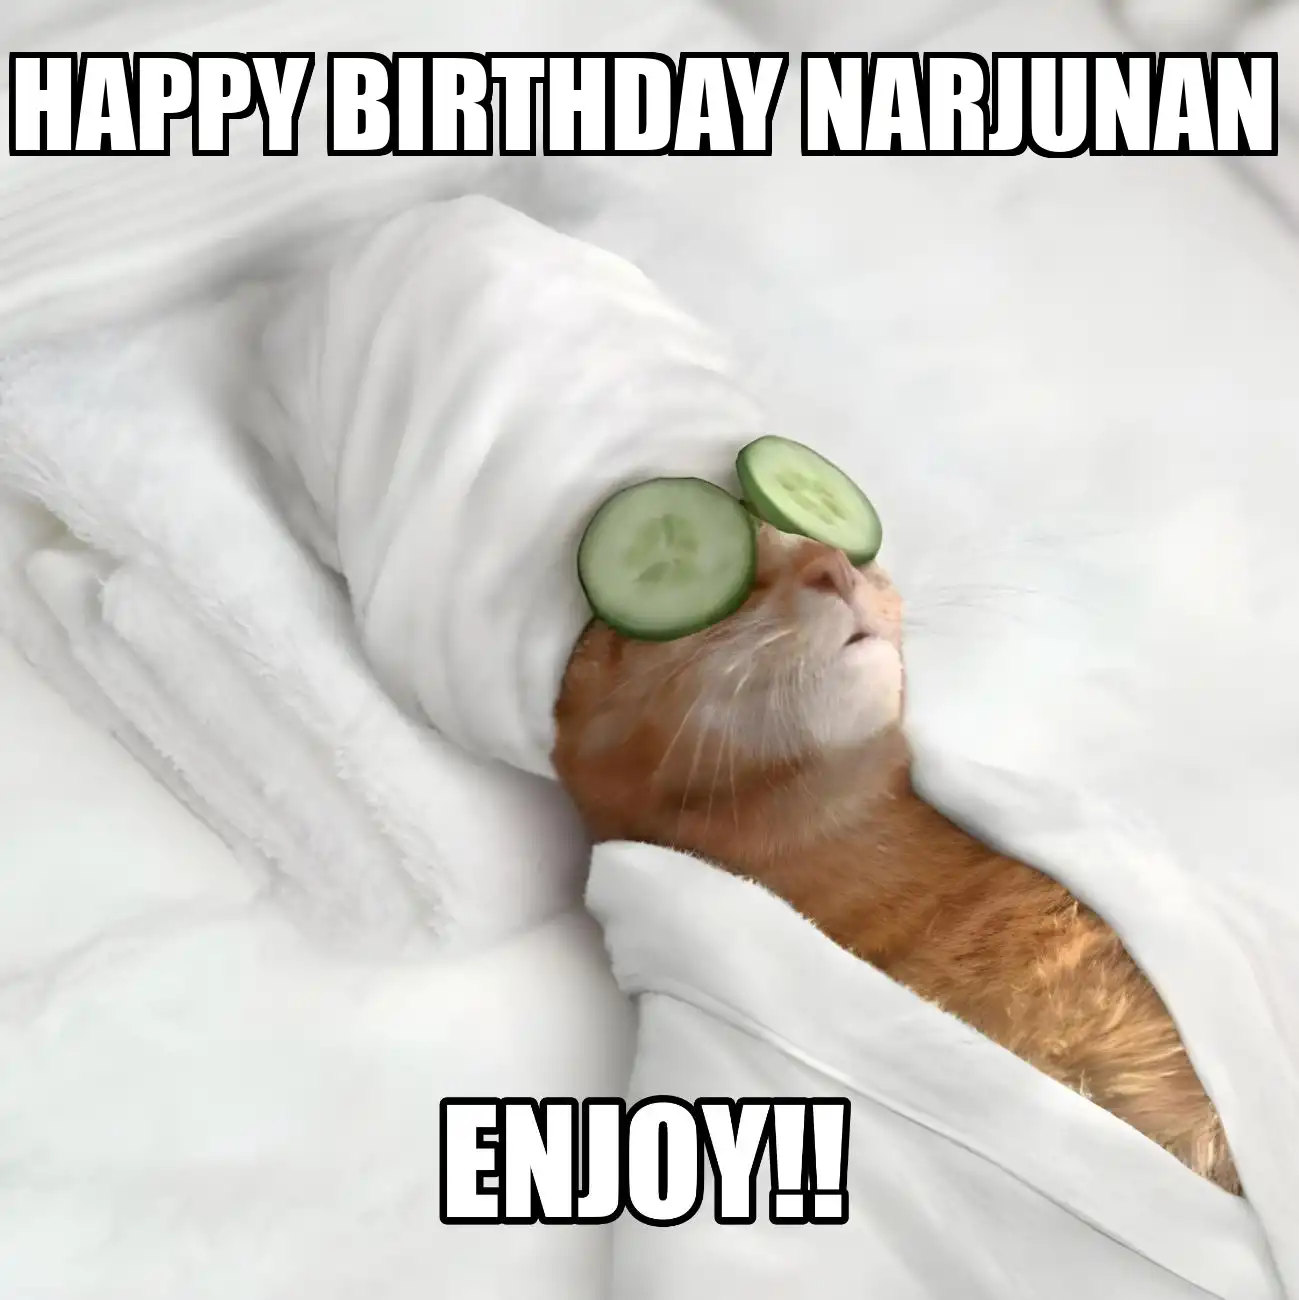 Happy Birthday Narjunan Enjoy Cat Meme